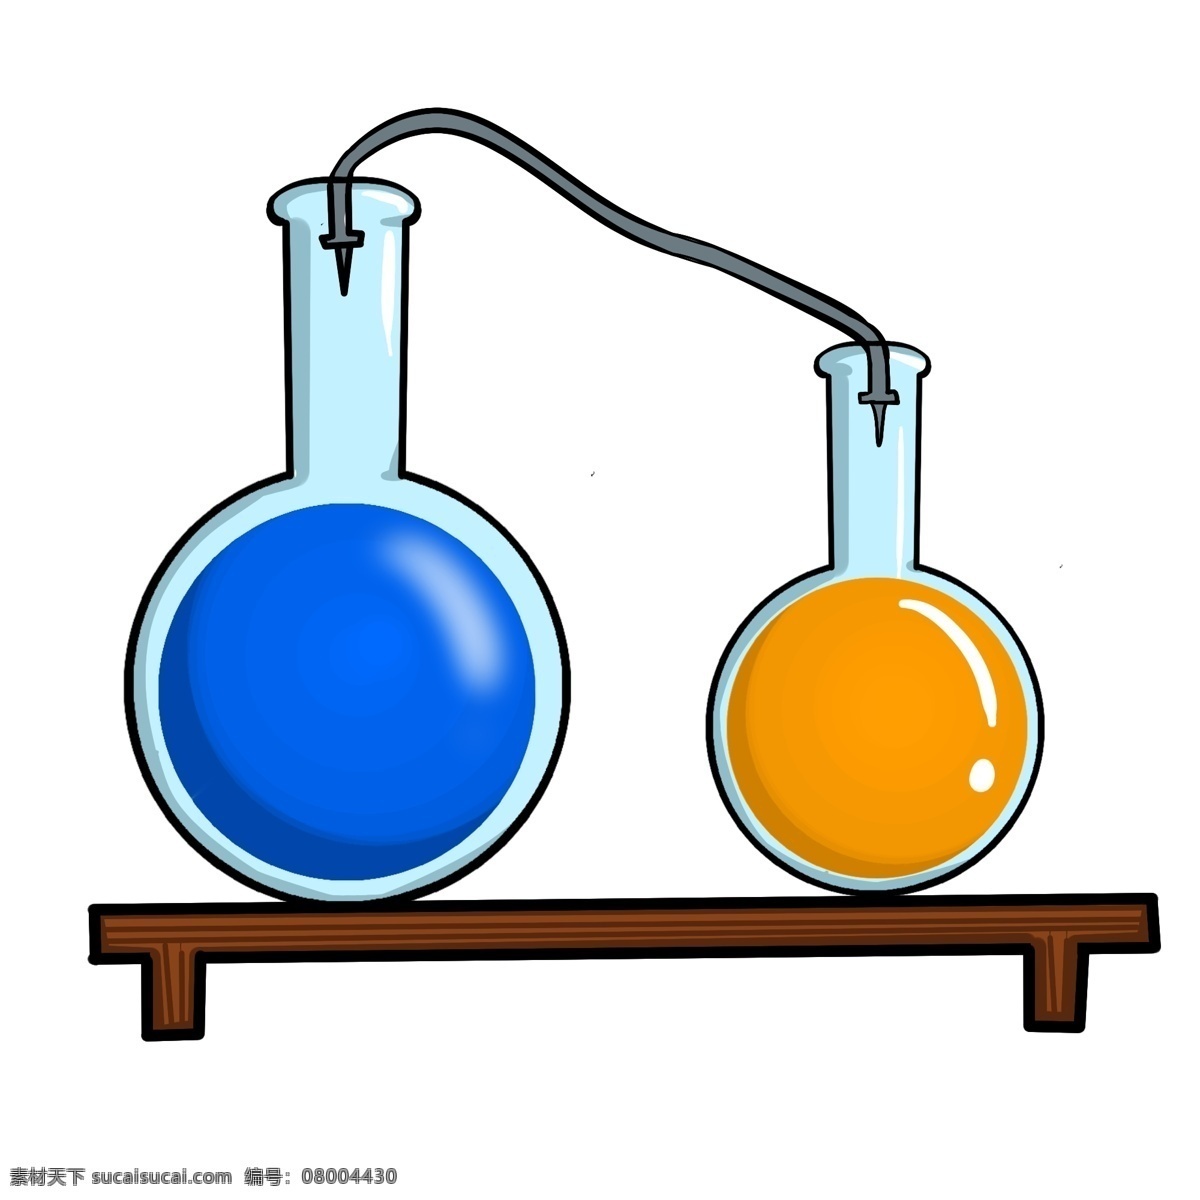 圆形 玻璃 器 容器 插图 两个容器 玻璃器容器 易碎品 棕色架子 立体容器 蓝色液体 黄色液体 图案插图